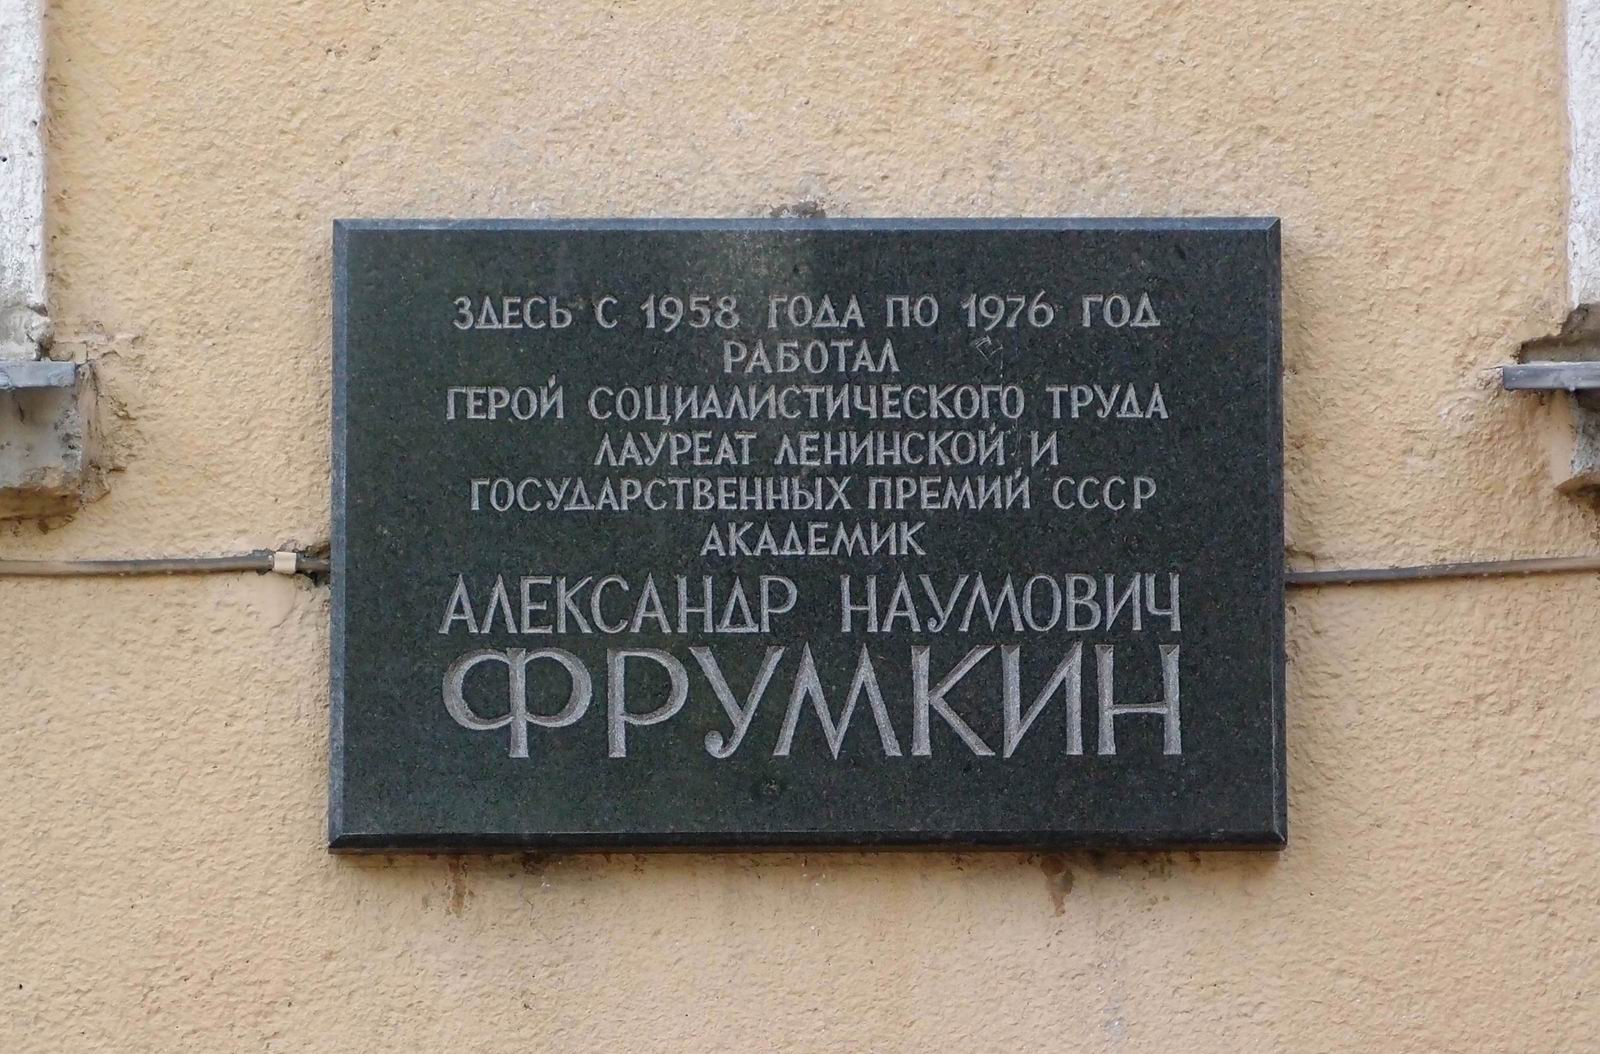 Мемориальная доска Фрумкину А.Н. (1895–1976), арх. С.А.Захаров, на Ленинском проспекте, дом 31, корпус 5, открыта 25.10.1983.